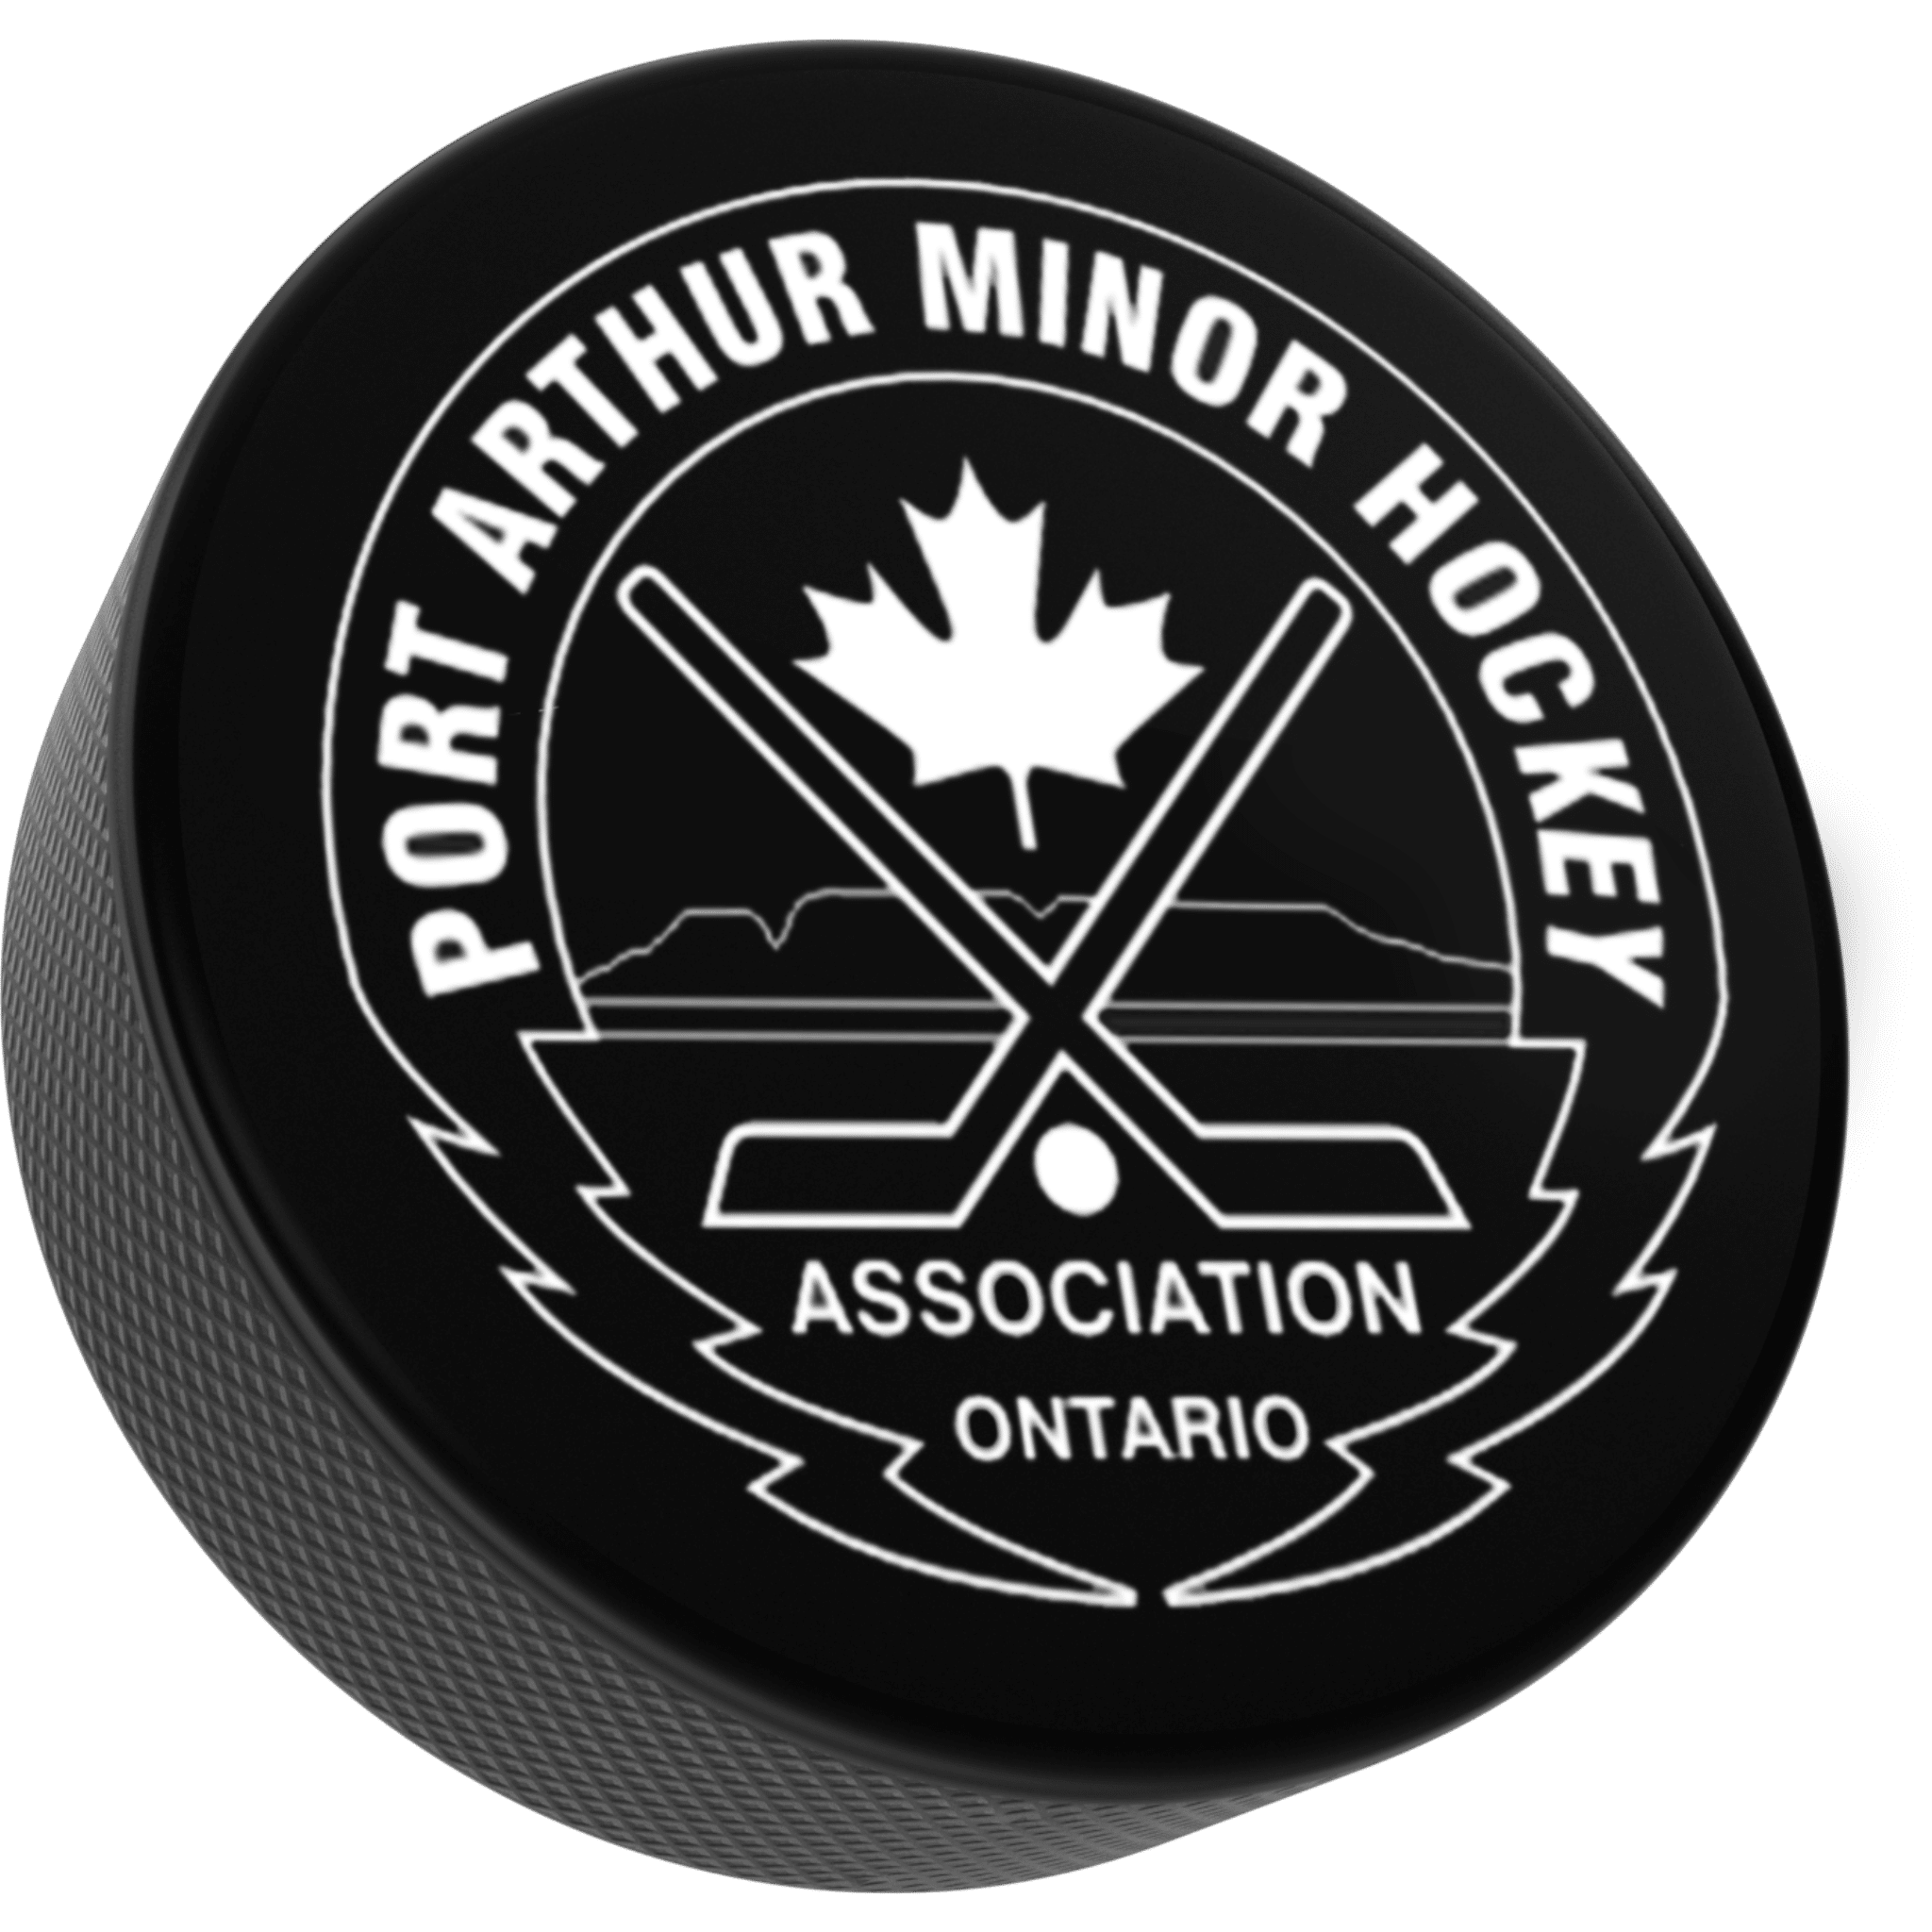 Port Arthur Minor Hockey Association